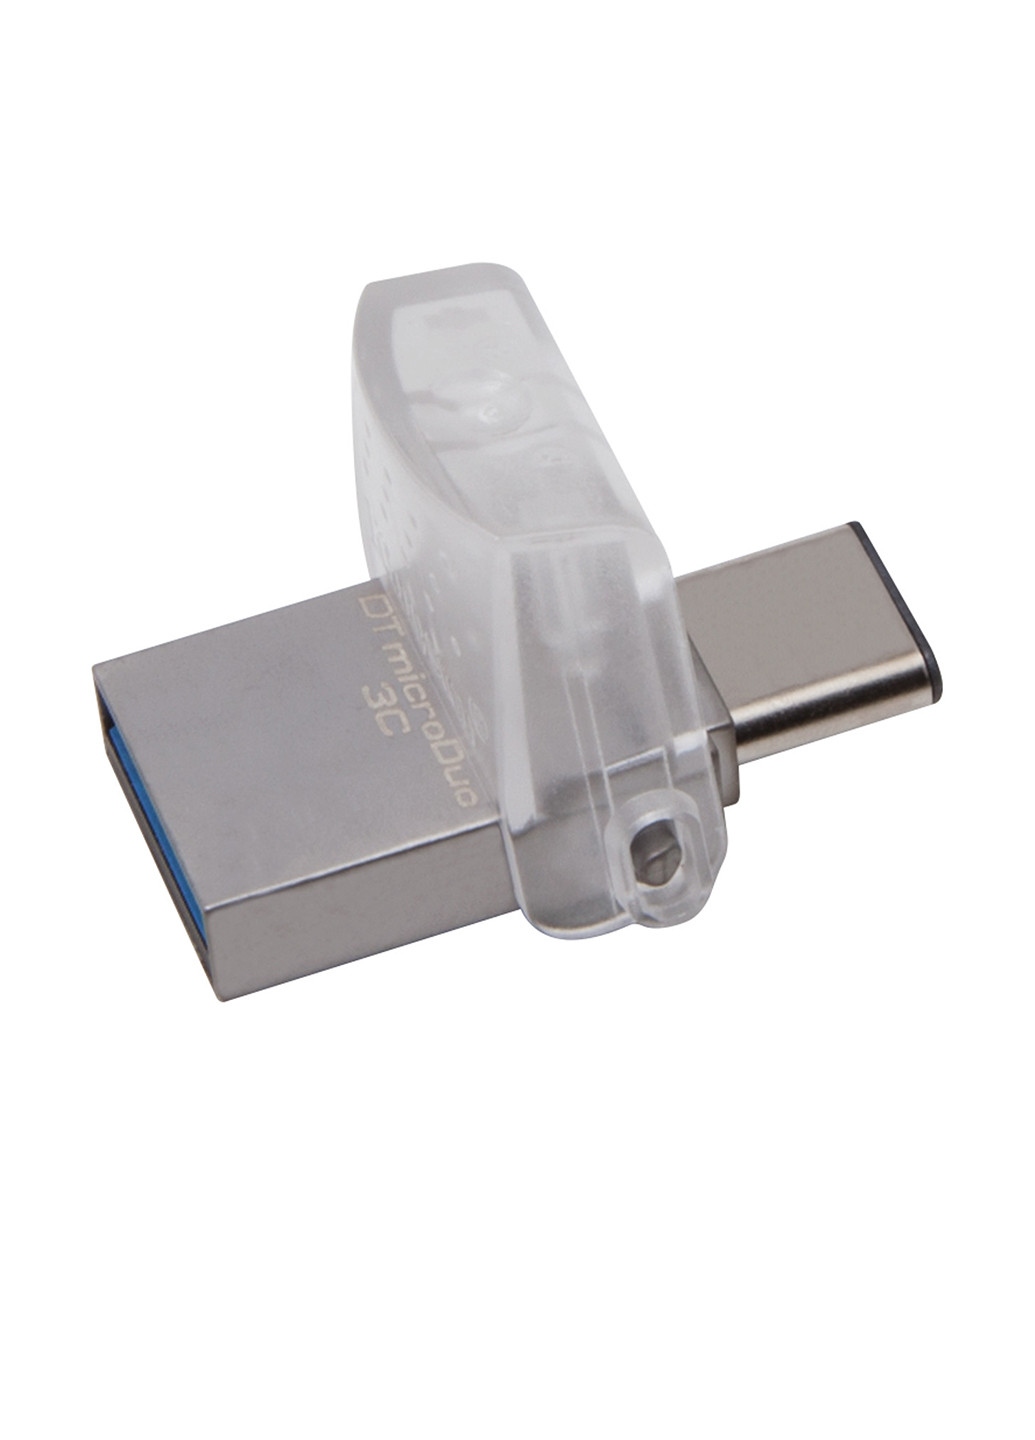 Флеш память USB DataTraveler microDuo 3C 32GB (DTDUO3C/32GB) Kingston Флеш память USB Kingston DataTraveler microDuo 3C 32GB (DTDUO3C/32GB) серебристые